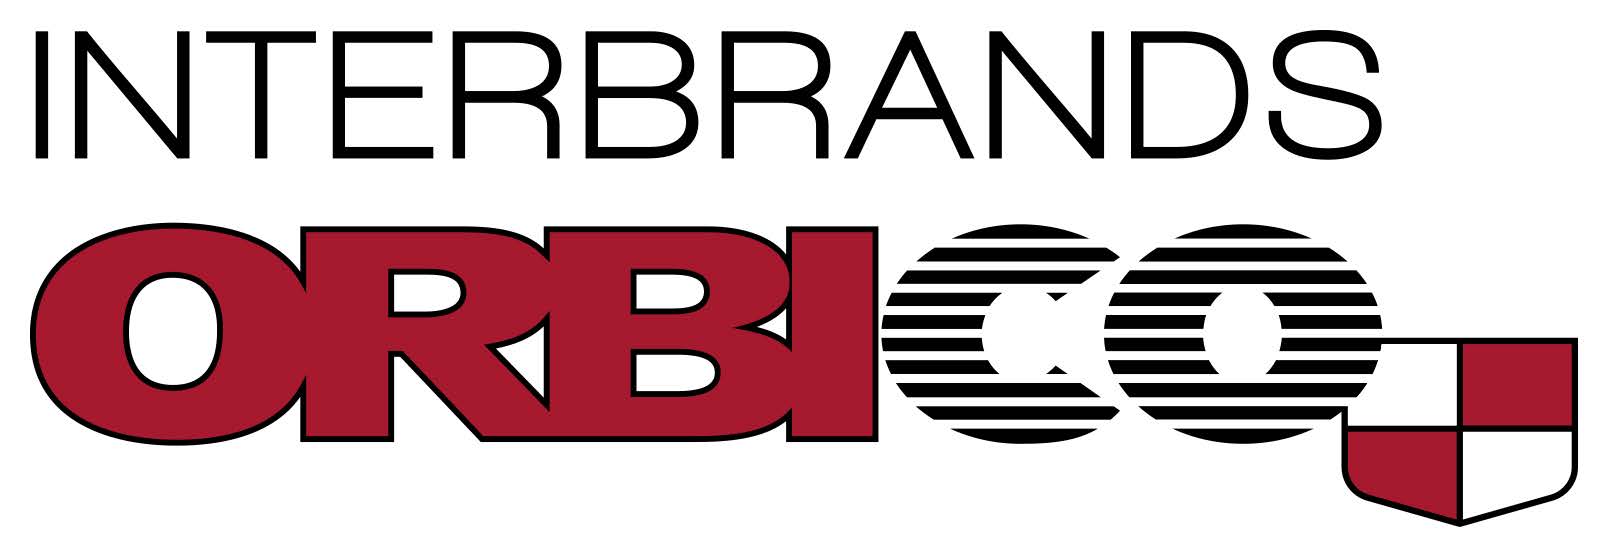 Orbico_Interbrands_logo_RGB_Positive